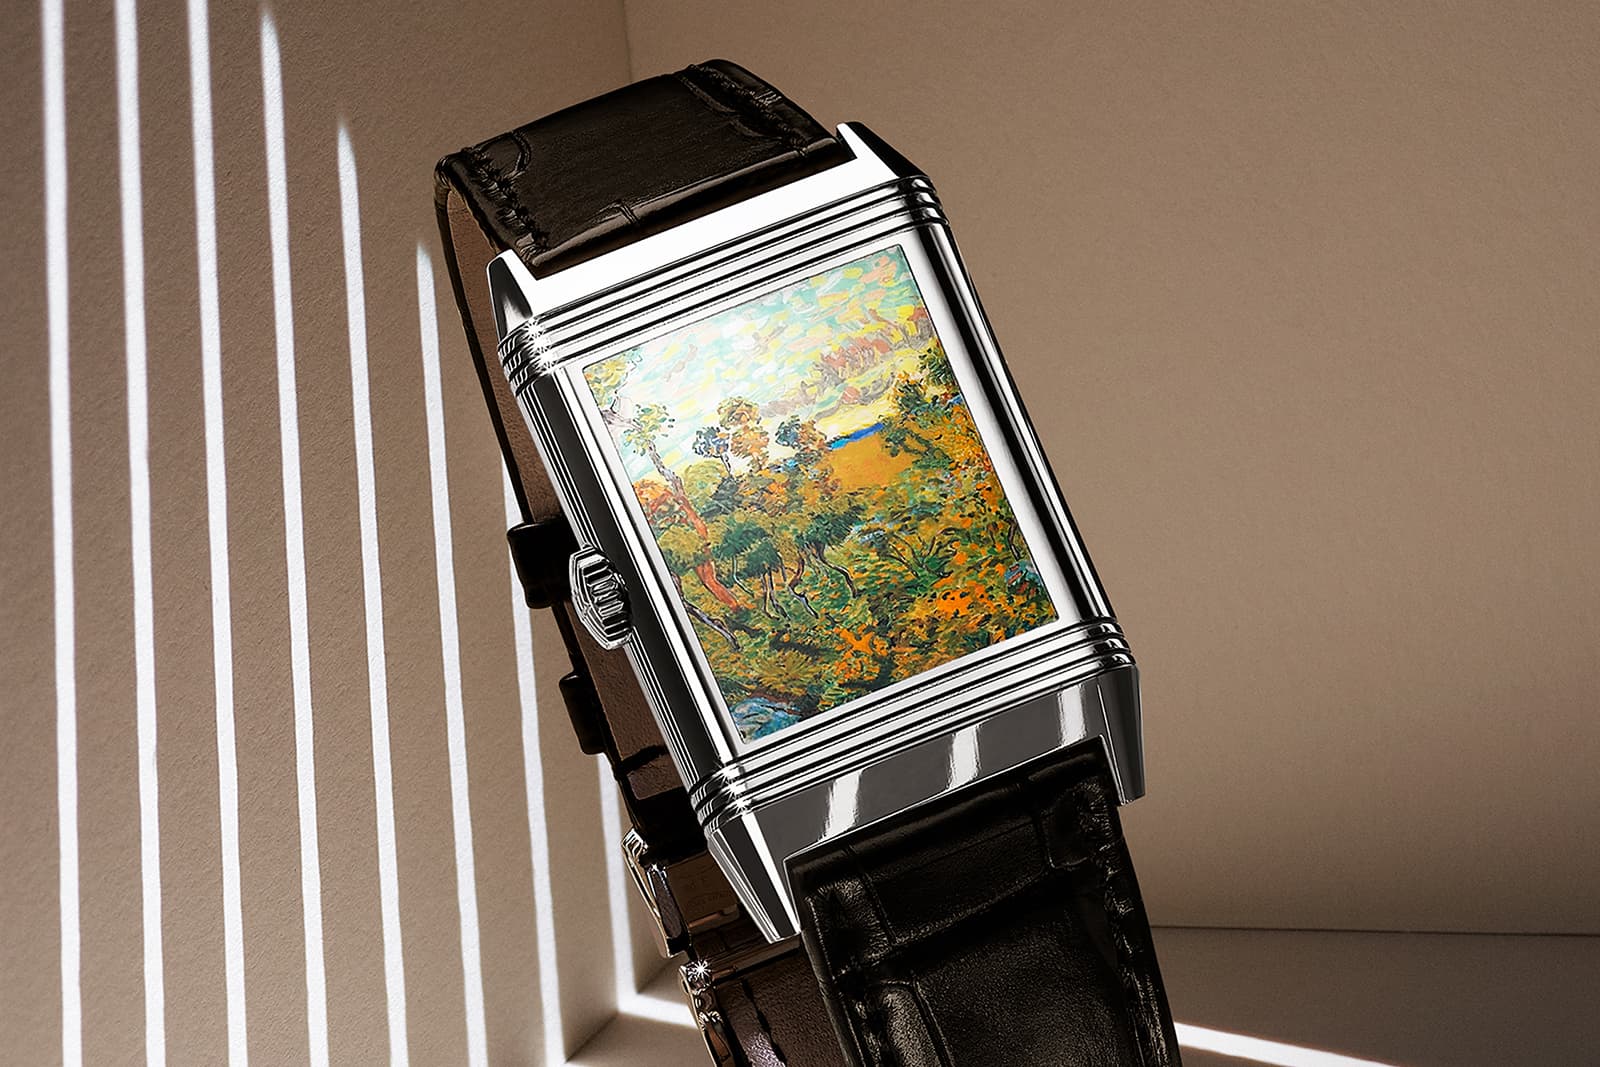 Часы Jaeger-LeCoultre Reverso Tribute Enamel Hidden Treasures с миниатюрной версией картины Винсента Ван Гога «Закат в Монмажуре» (1888 г.) на задней крышке и гильошированным циферблатом